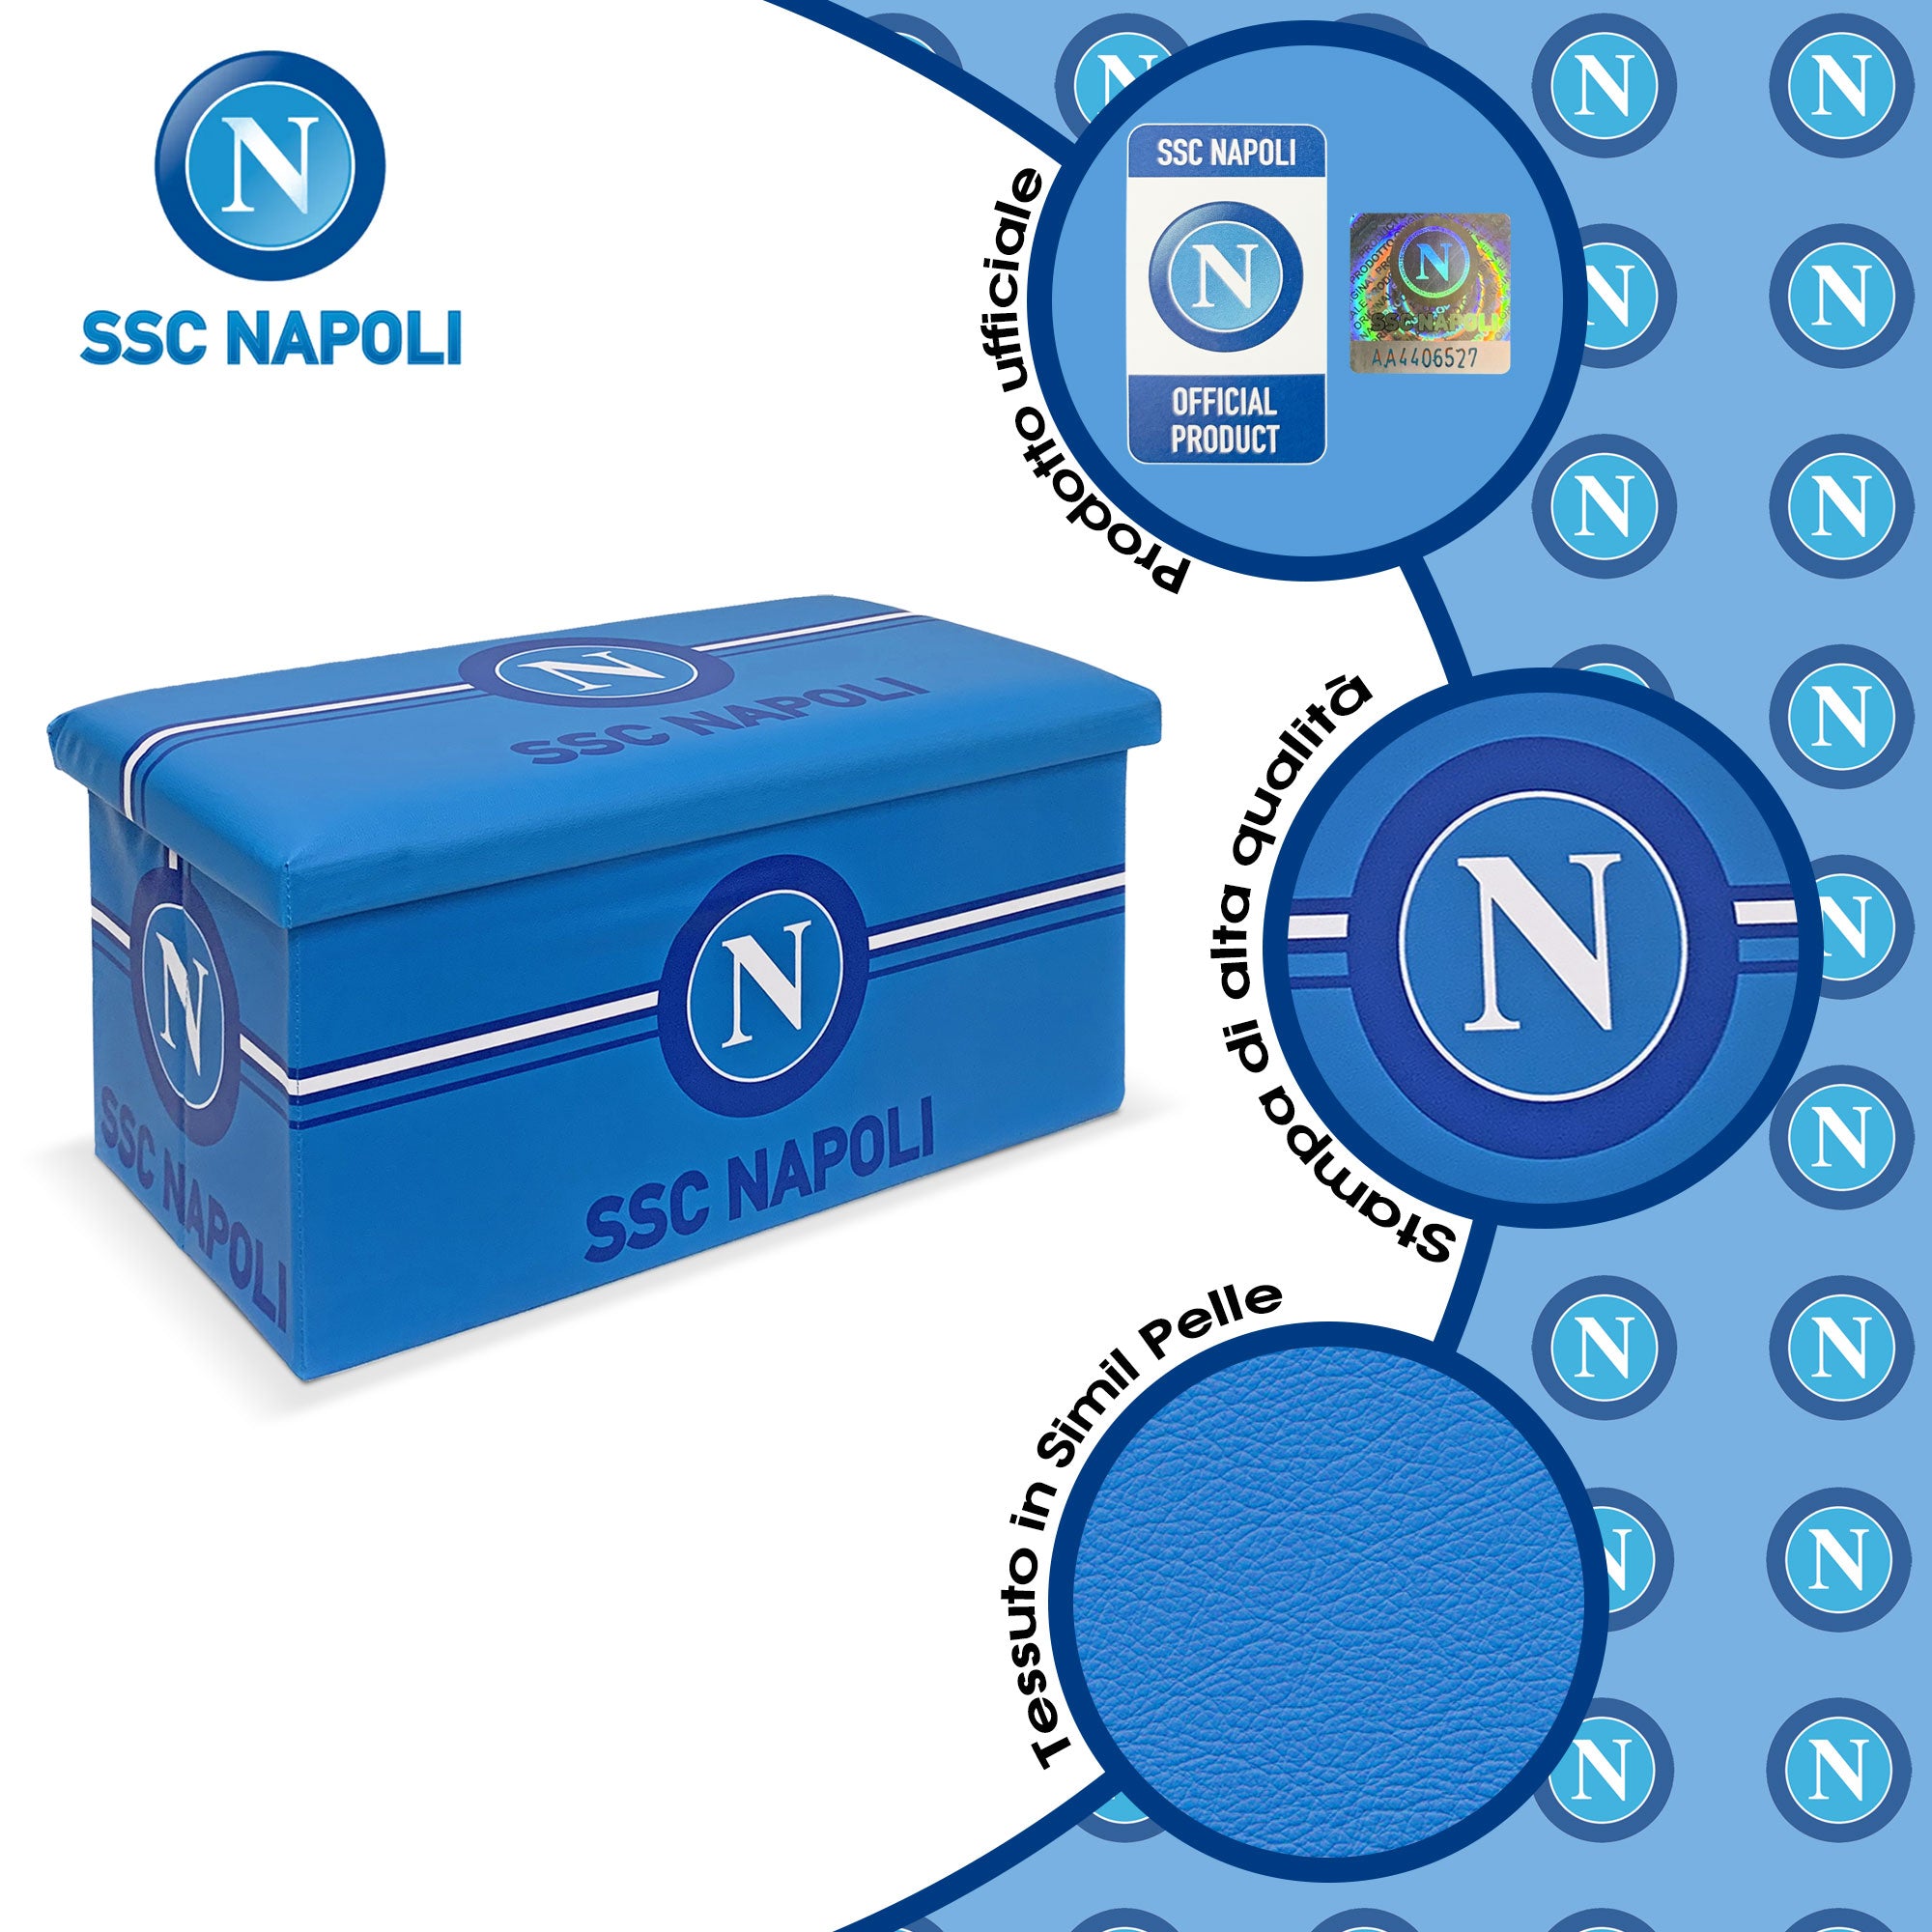 Panca Contenitore SSC Napoli Pouf Baule Poggiapiedi in ecopelle 76x38x38cm 6128